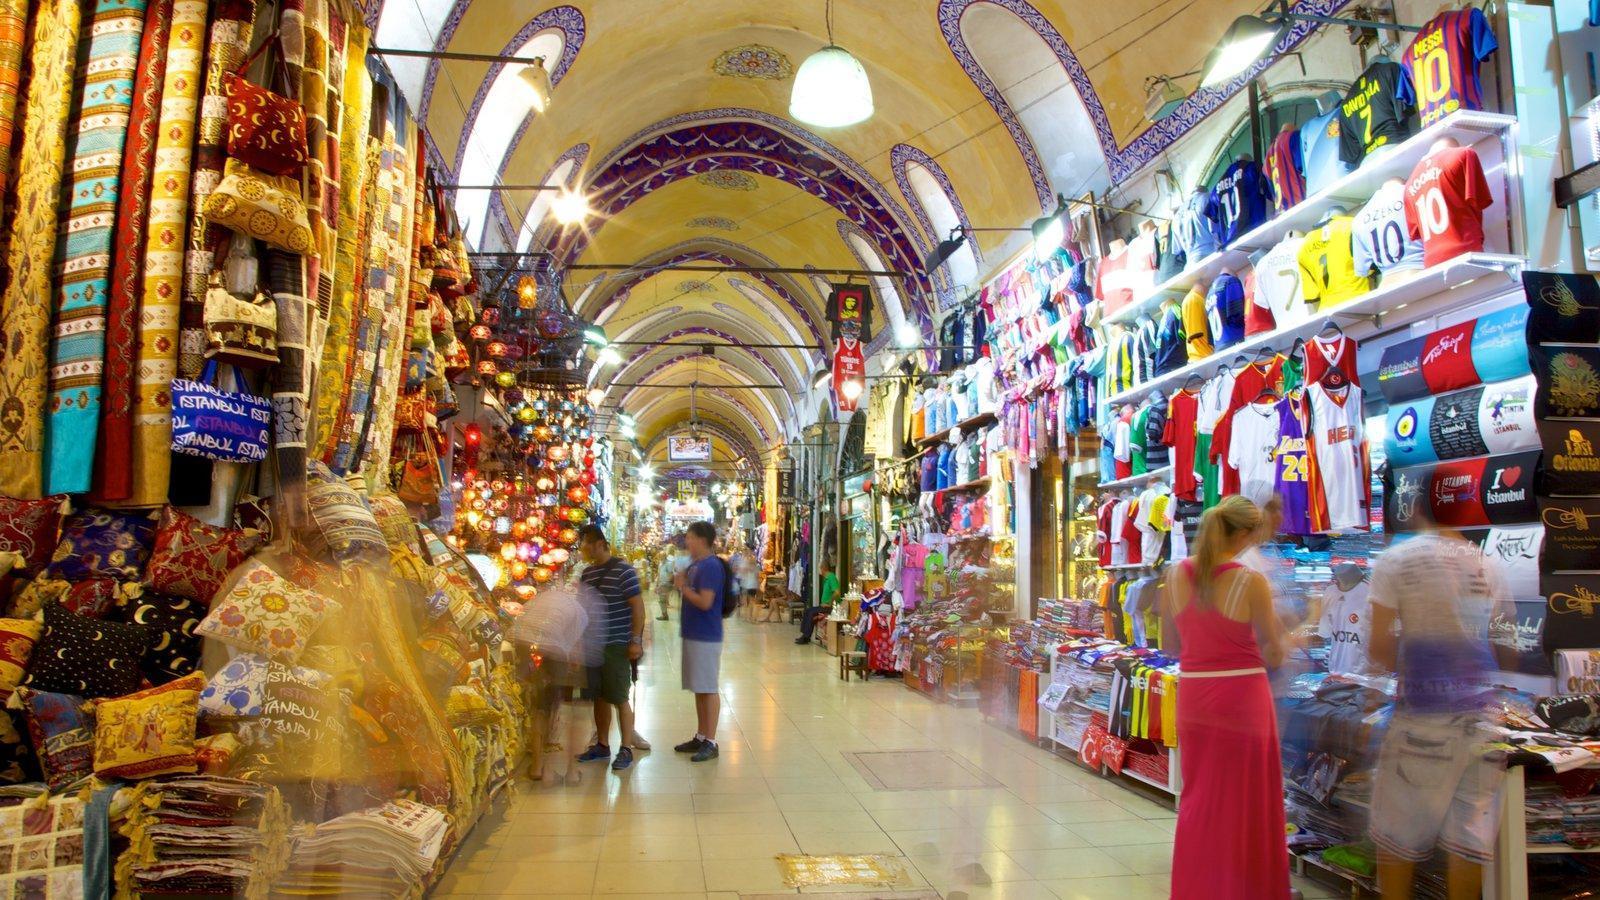 No unoccupied shops left in Grand Bazaar - Türkiye News